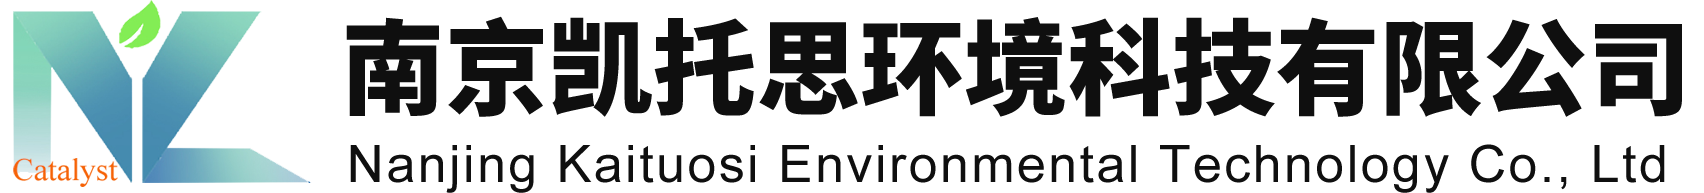 南京凯托思环境科技有限公司 